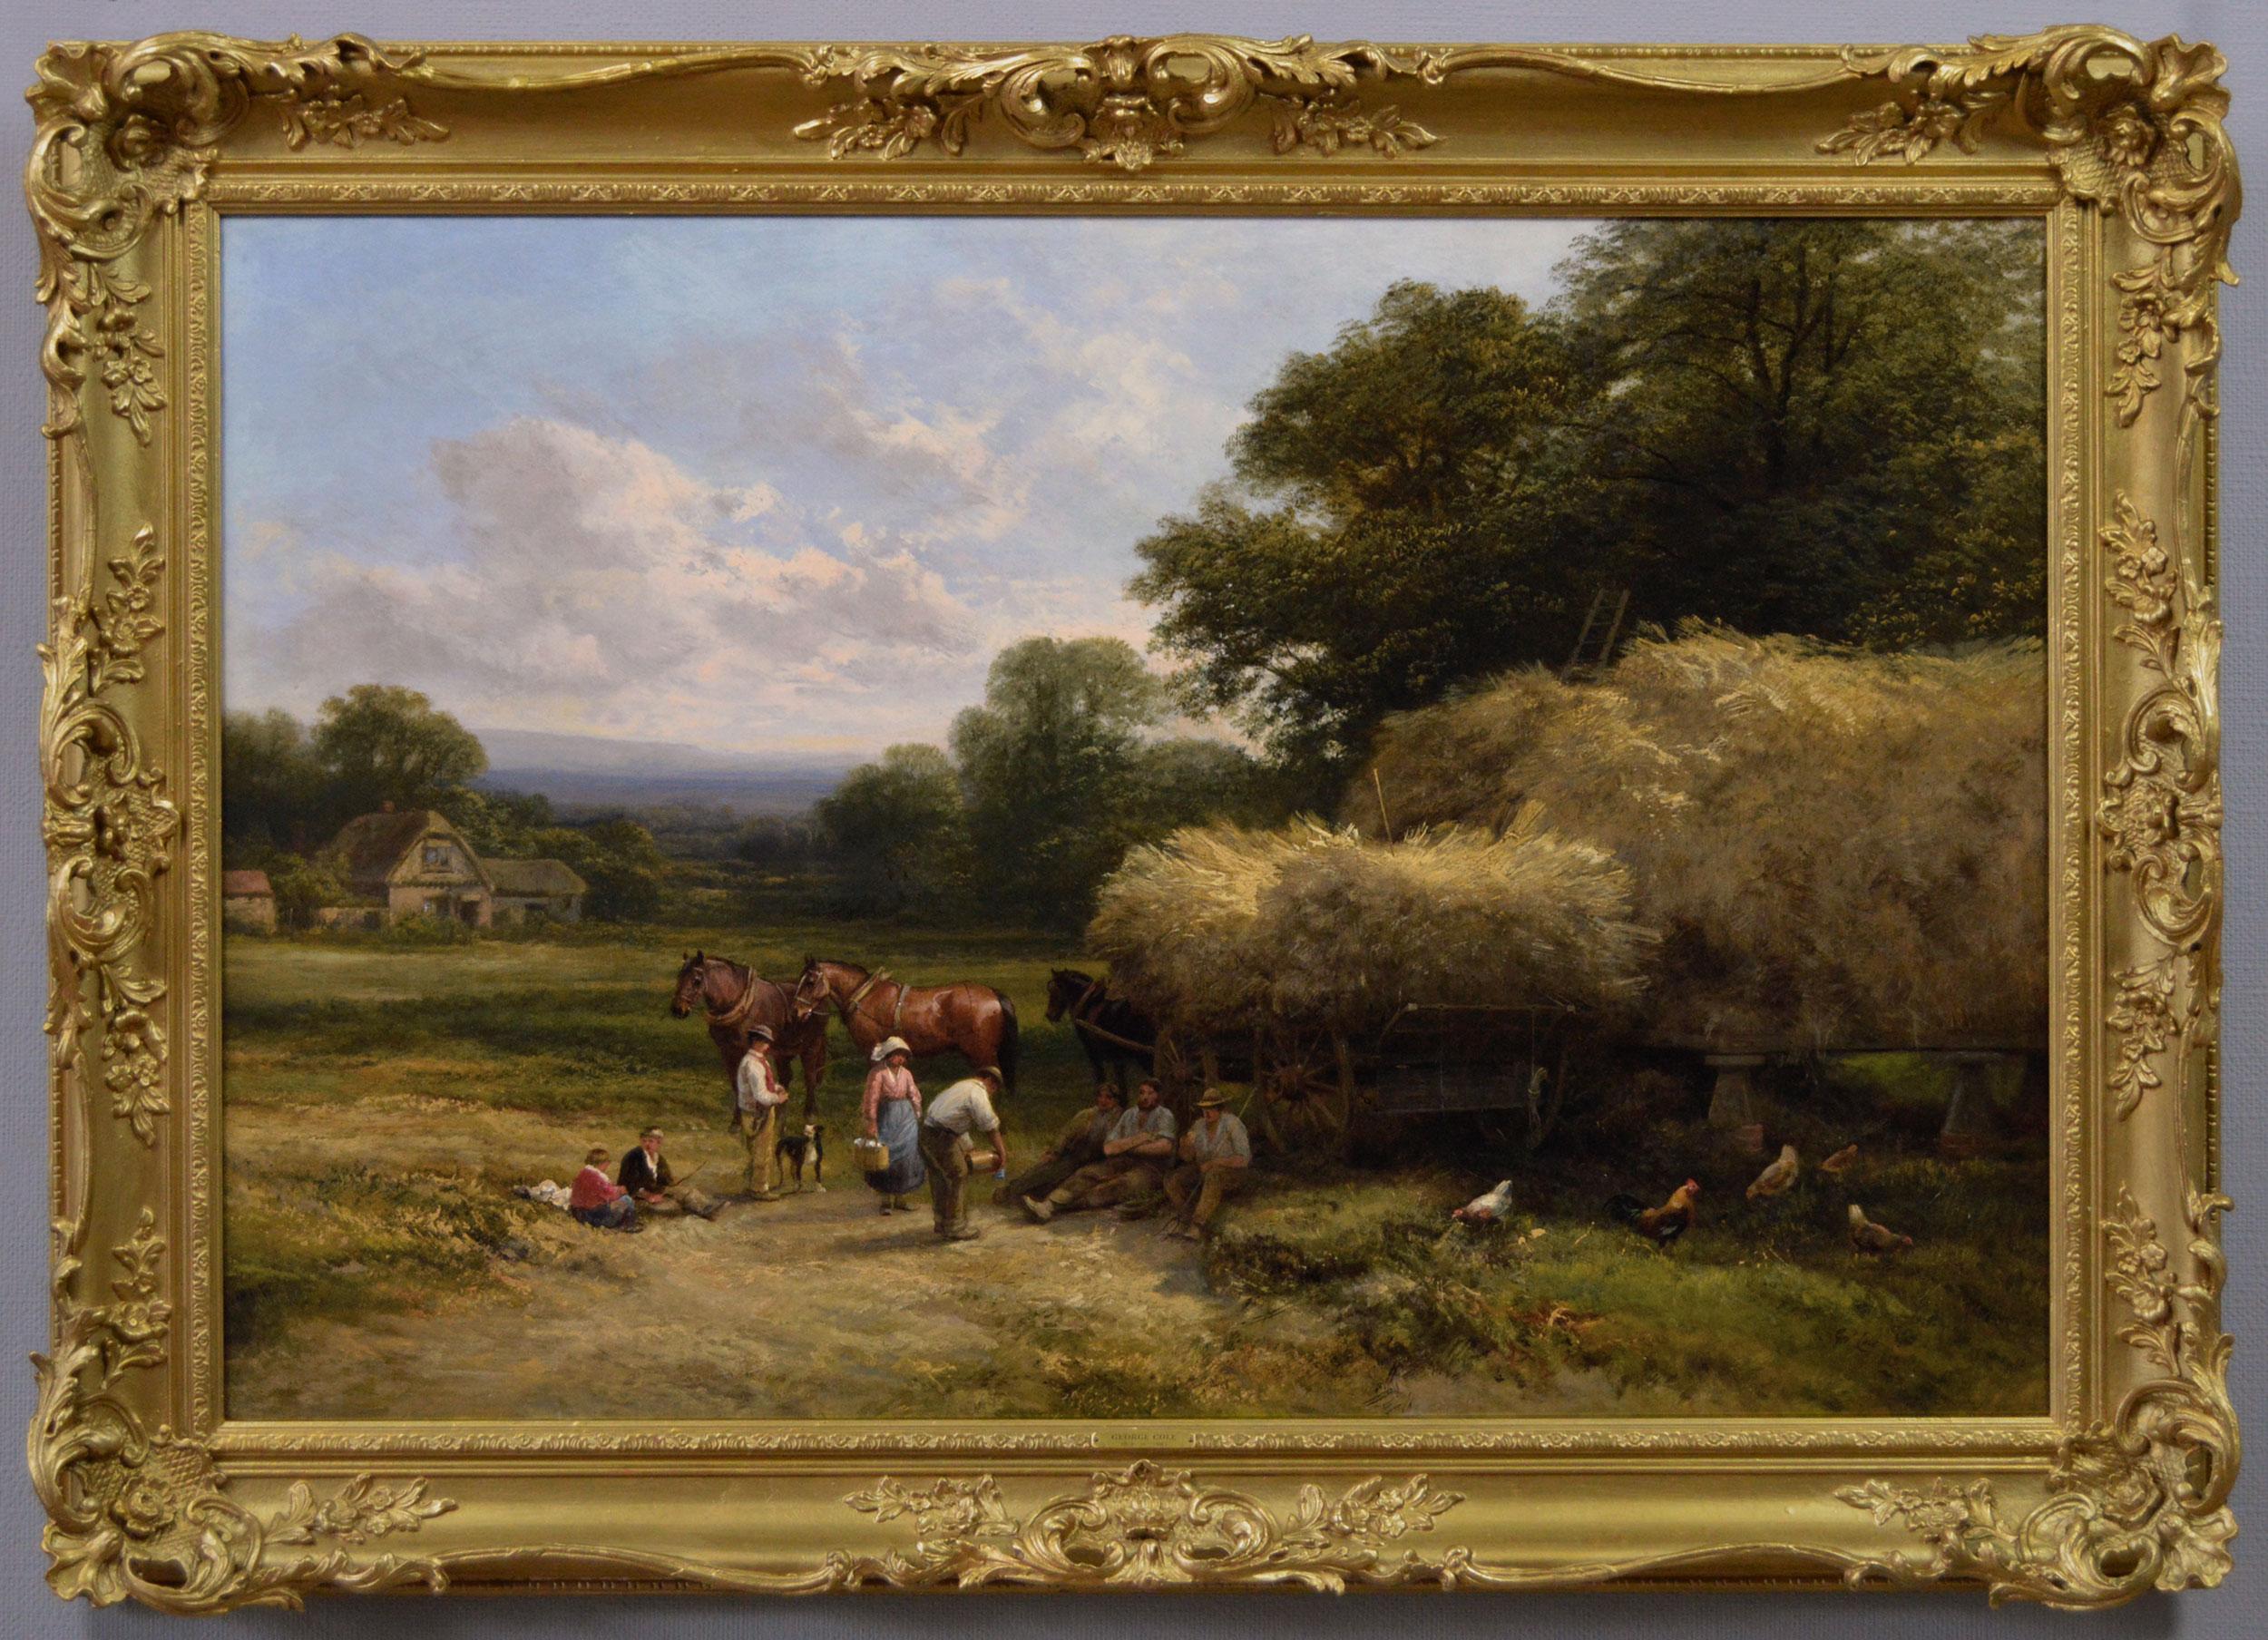 Peinture à l'huile de genre paysage du 19e siècle représentant des ouvriers agricoles avec des chevaux et un chien